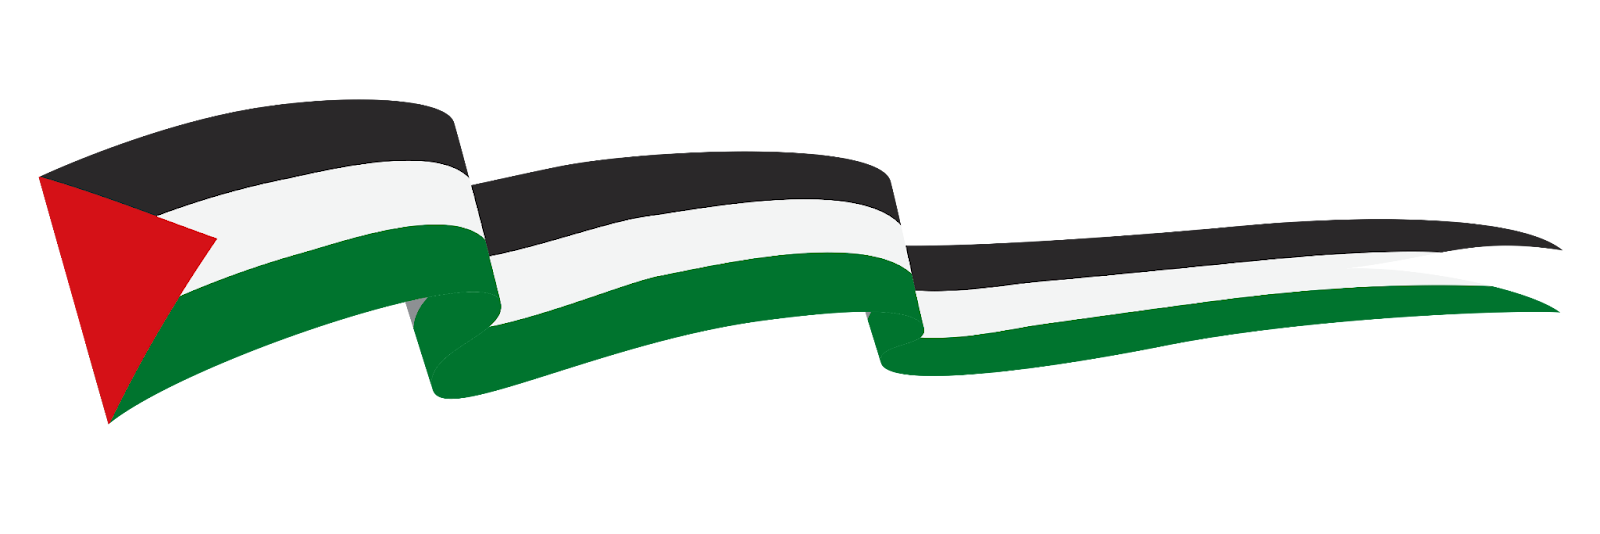 small waving palestine flag